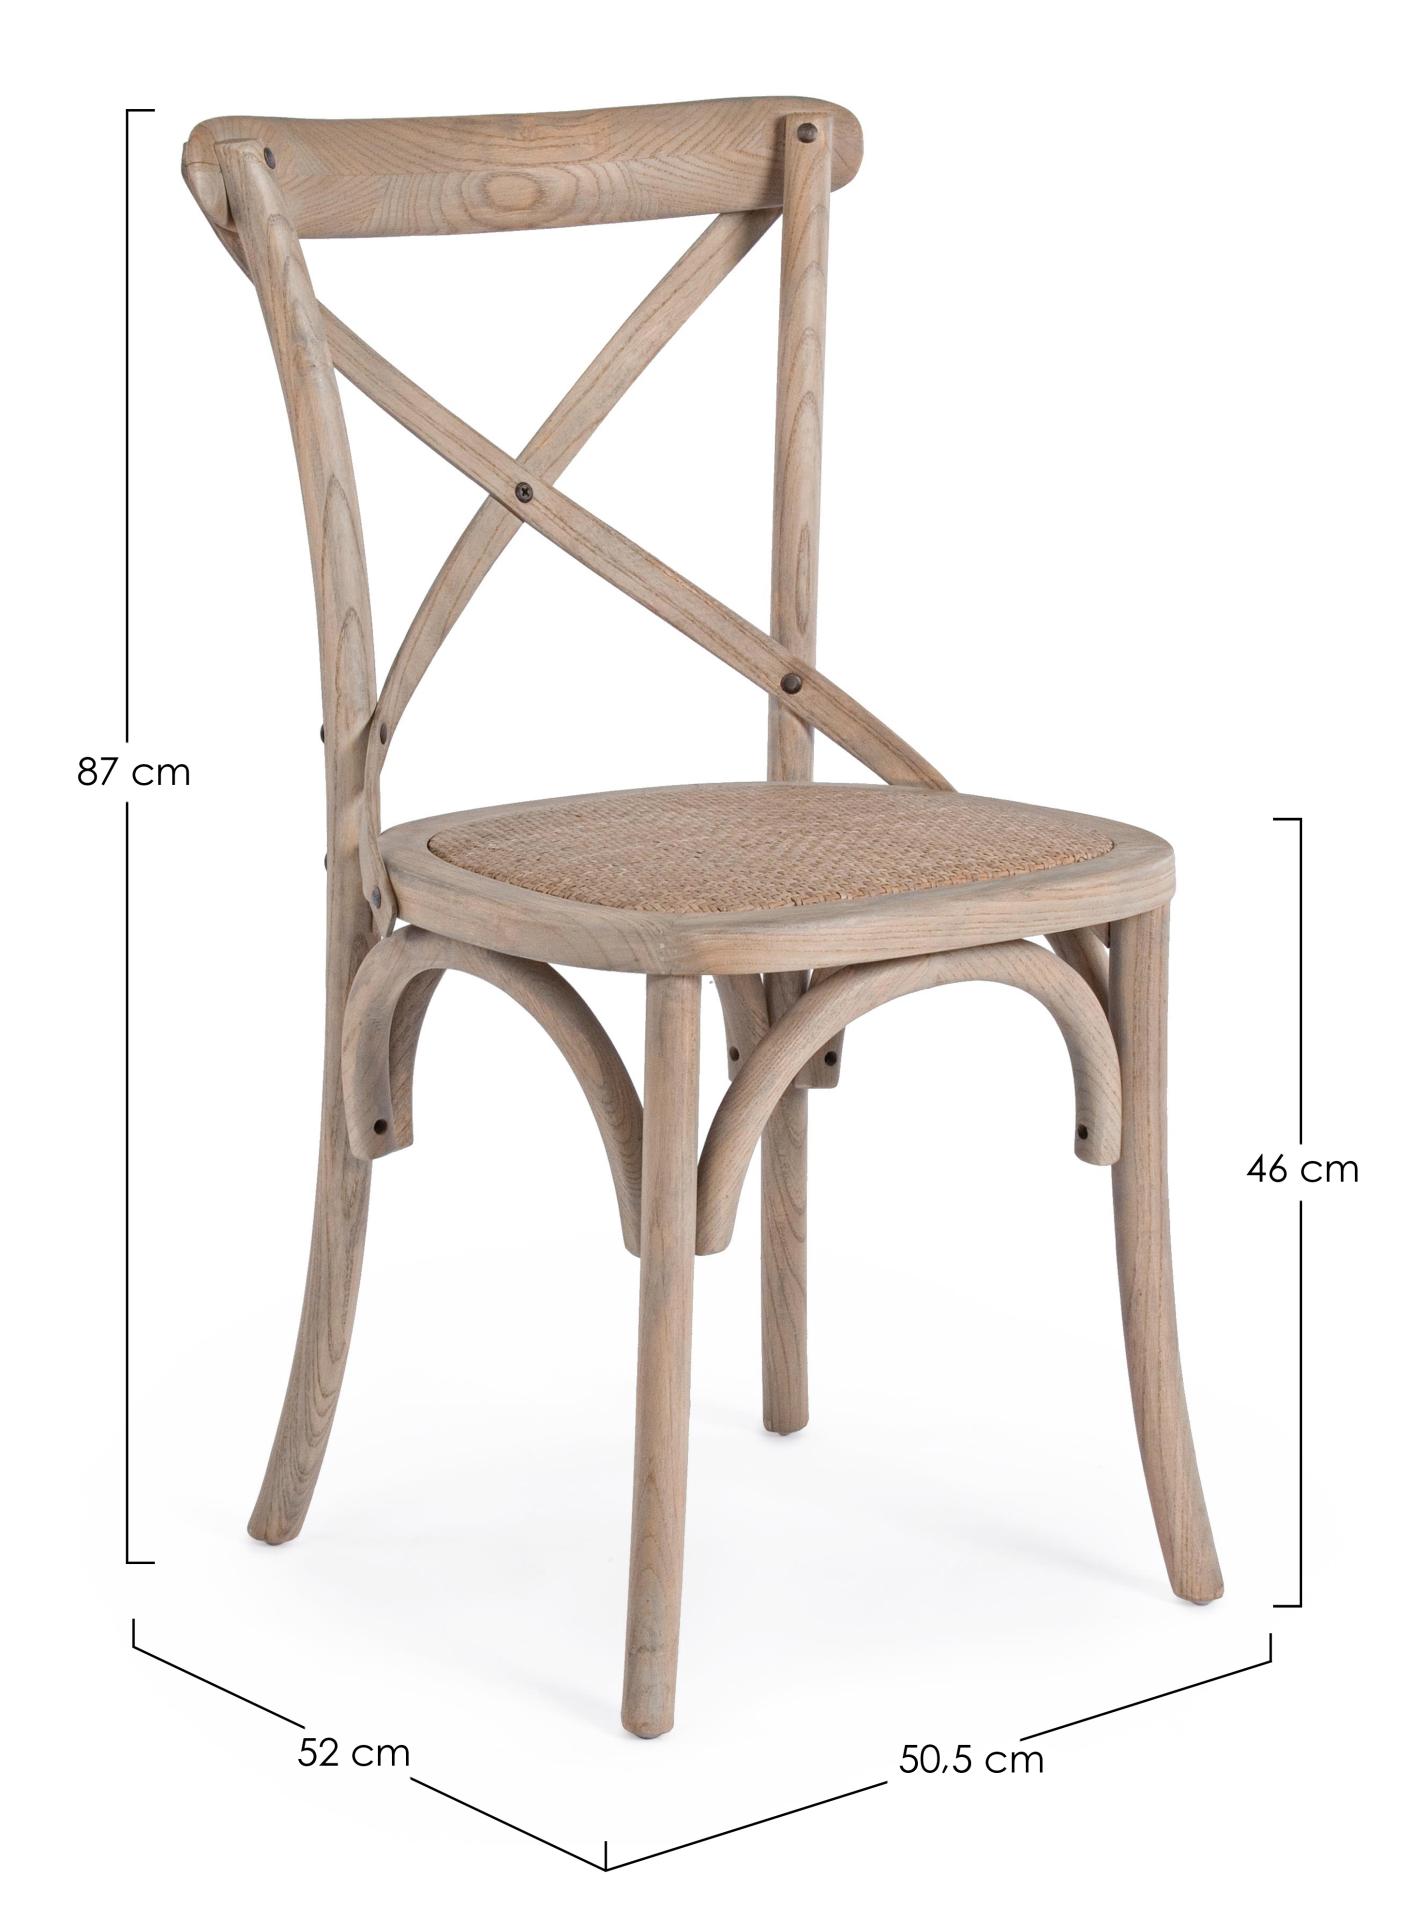 Der Stuhl Cross überzeugt mit seinem klassischen Design. Gefertigt wurde der Stuhl aus Ulmenholz, welches einen natürlichen Farbton besitzt. Die Sitz- und Rückenfläche ist aus Rattan gefertigt. Die Sitzhöhe beträgt 46 cm.